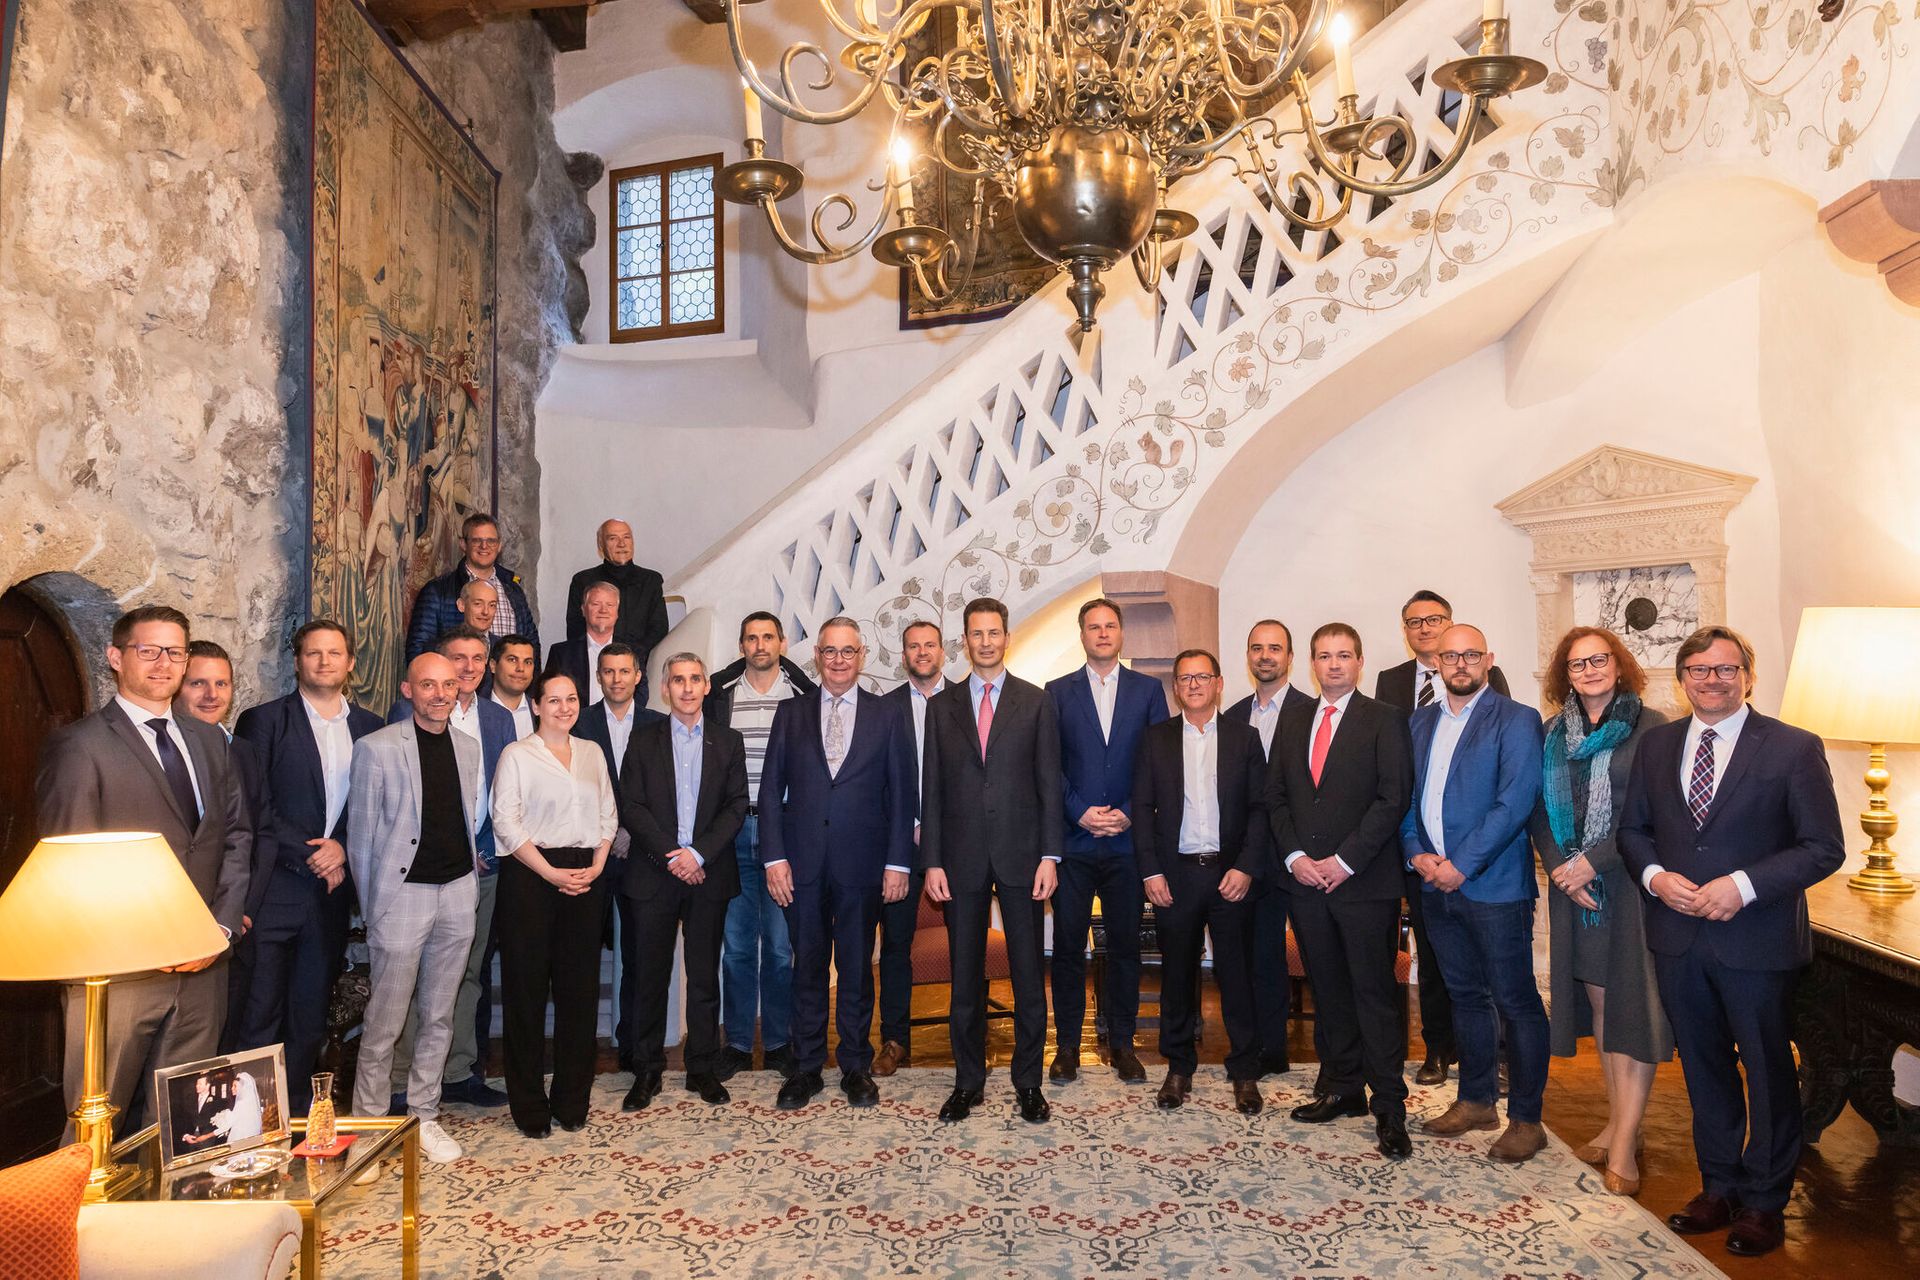 Η συνάντηση μεταξύ των XNUMX μελών του διοικητικού συμβουλίου της πρωτοβουλίας digital-liechtenstein-li και του διάδοχου πρίγκιπα Alois von und zu Liechtenstein στο Κάστρο Vaduz